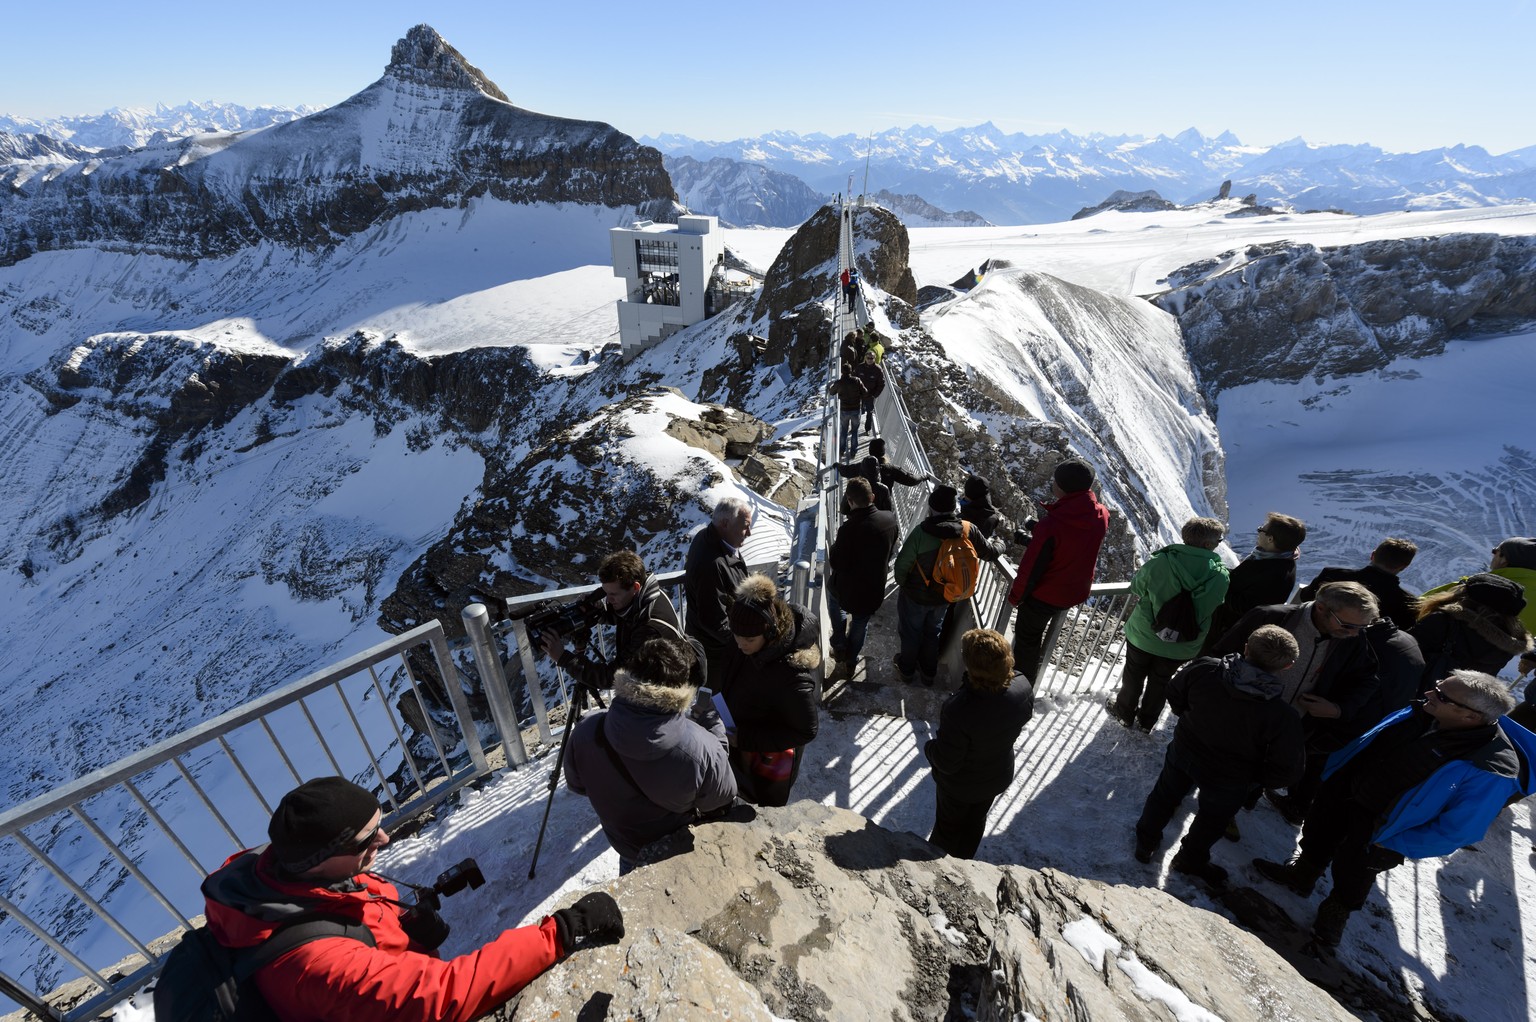 «Das ist eine besonders wichtige Erweiterung des Angebots der Tourismusdestination», wird Bernhard Tschannen, CEO von Glacier 3000, am Freitag in der Medienmitteilung zitiert. Die Brücke sei zudem wic ...